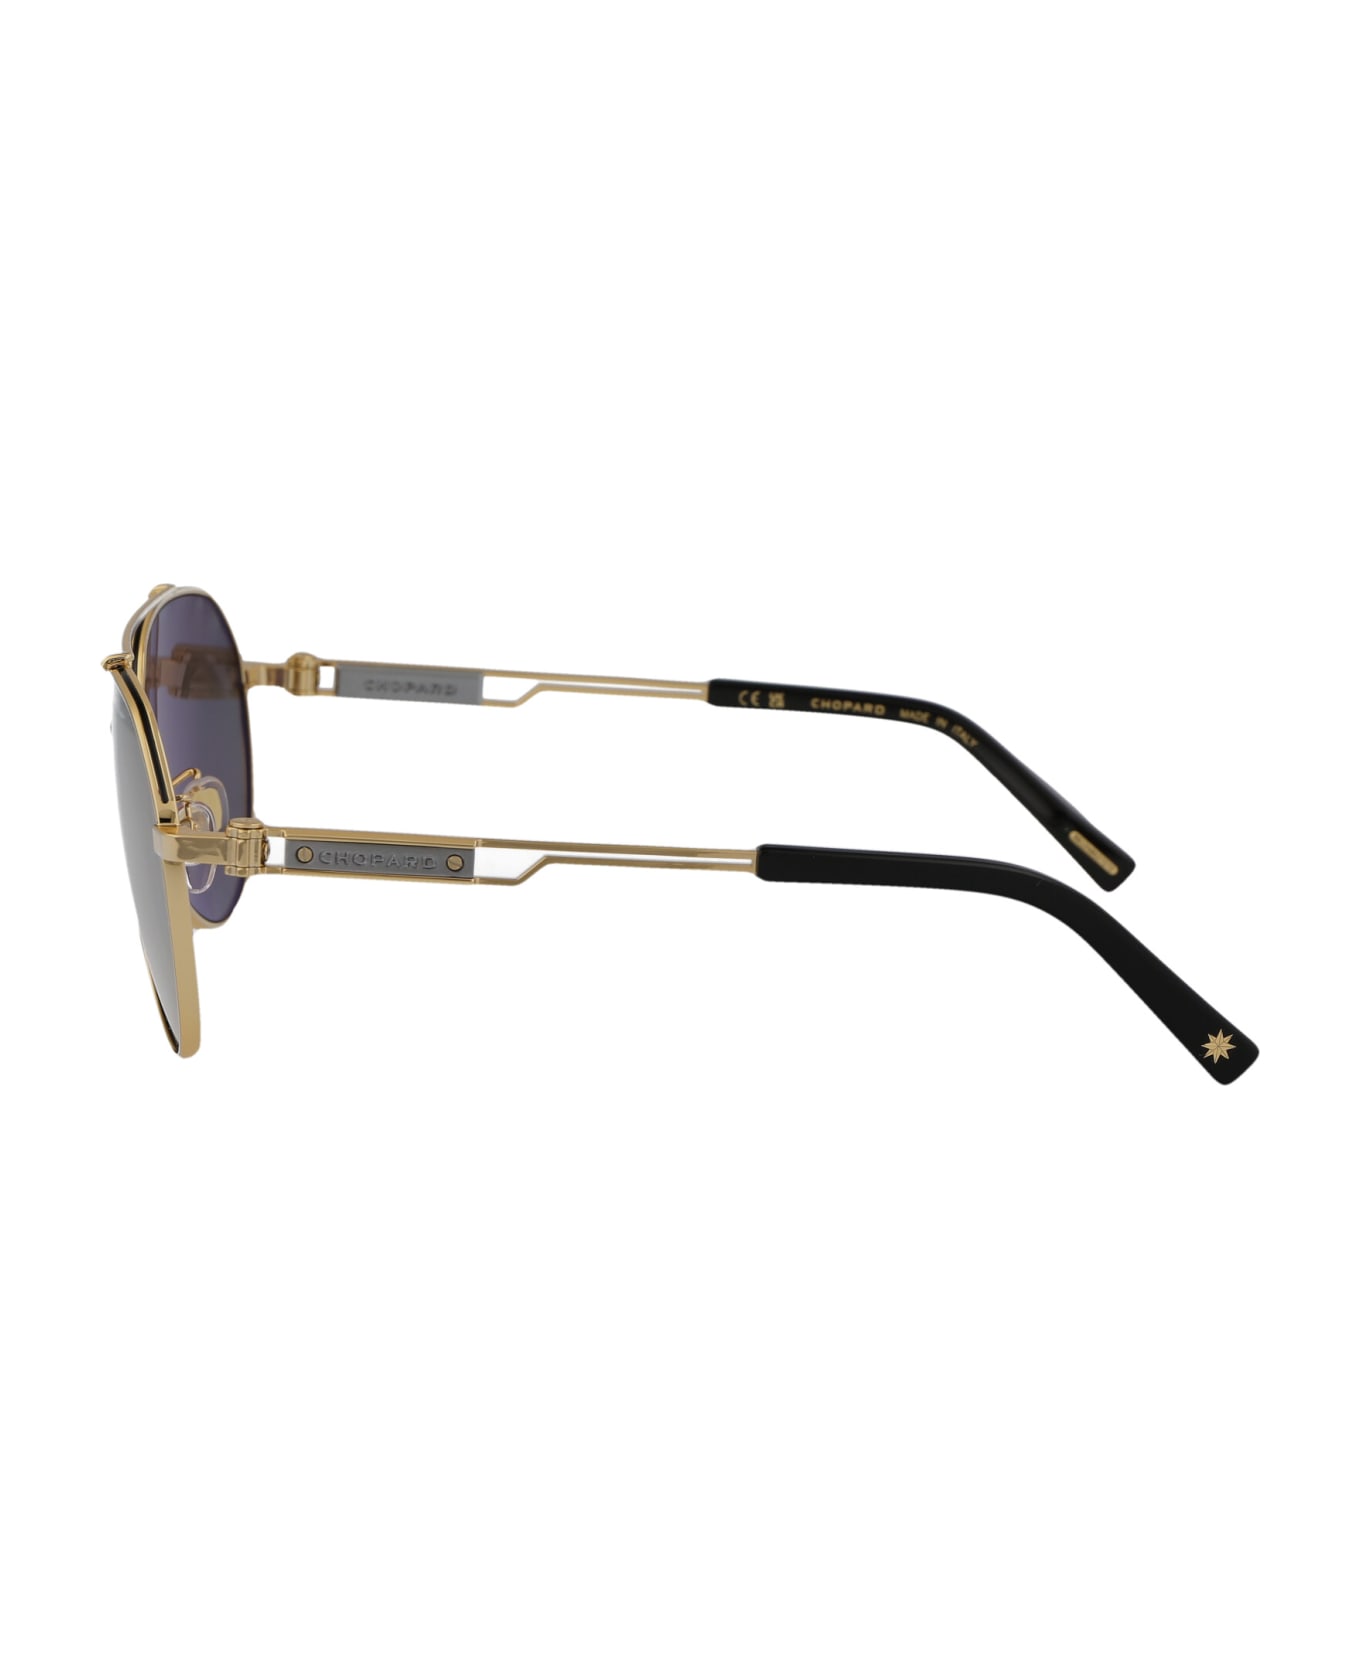 Chopard Schg63 Sunglasses - 400P GOLD